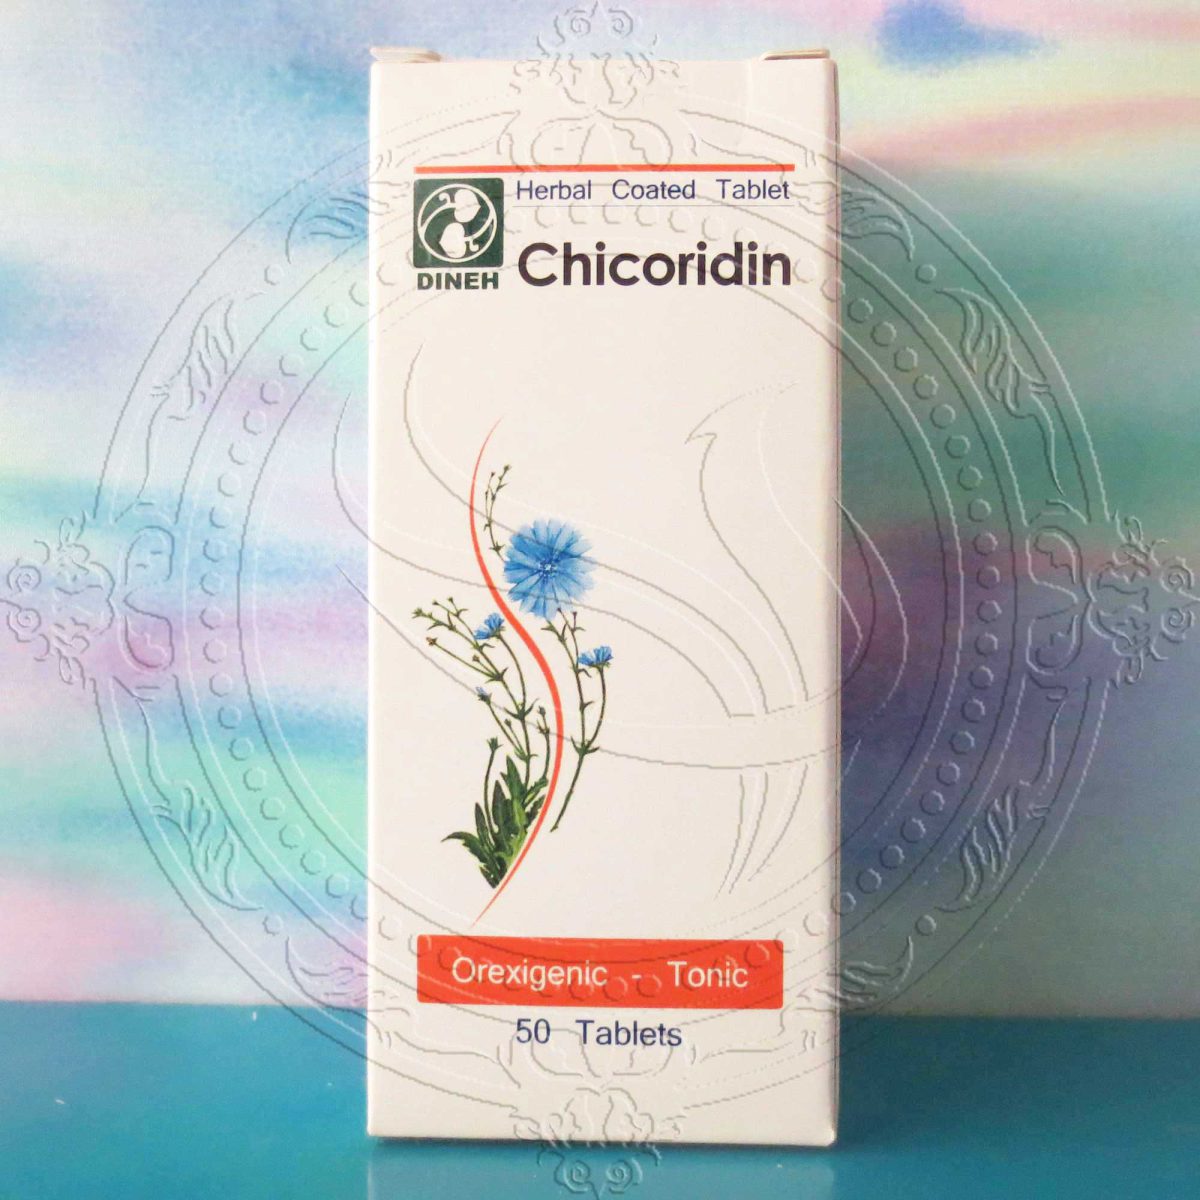 شیکوریدین chicoridin